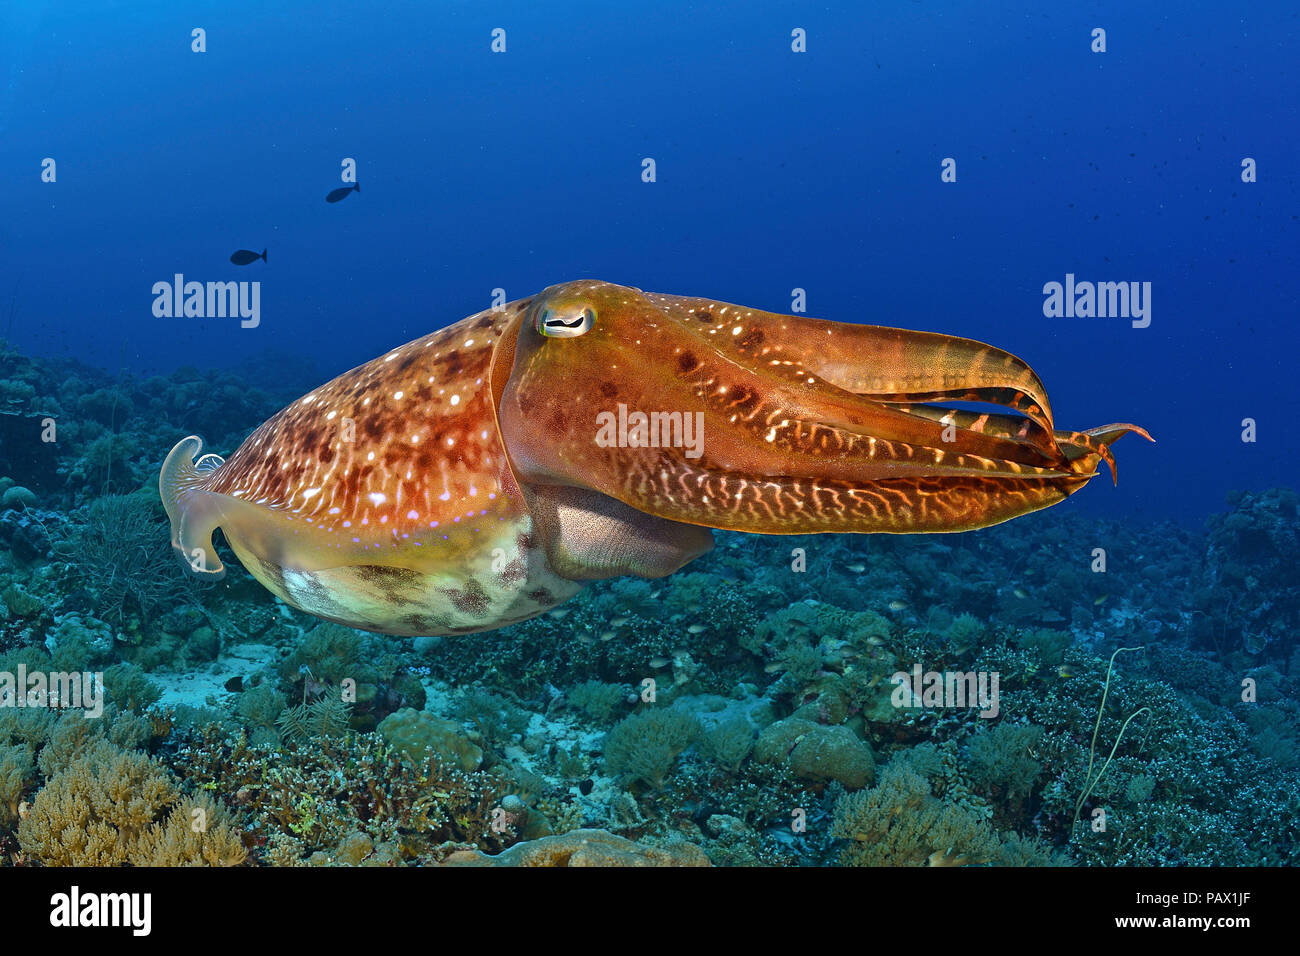 Broadclub Tintenfische (Sepia latimanus), Palau, Mikronesia Stockfoto